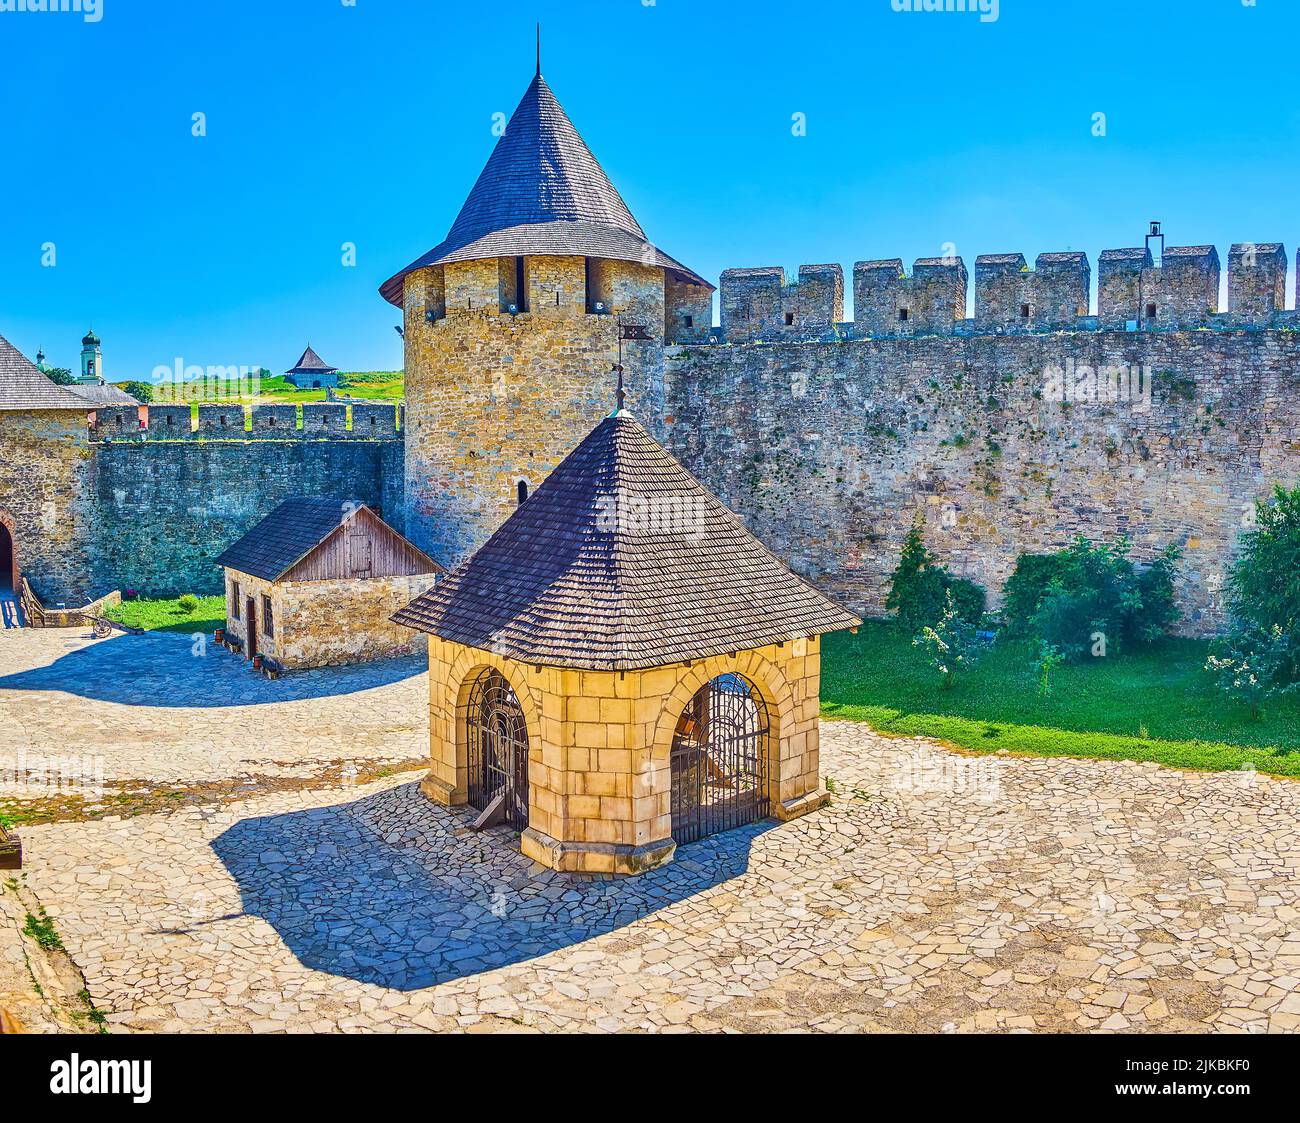 Il bellissimo cortile in pietra della Fortezza di Khotyn con massicci bastioni, torri e il pozzo, sormontato da un padiglione in pietra, Ucraina Foto Stock